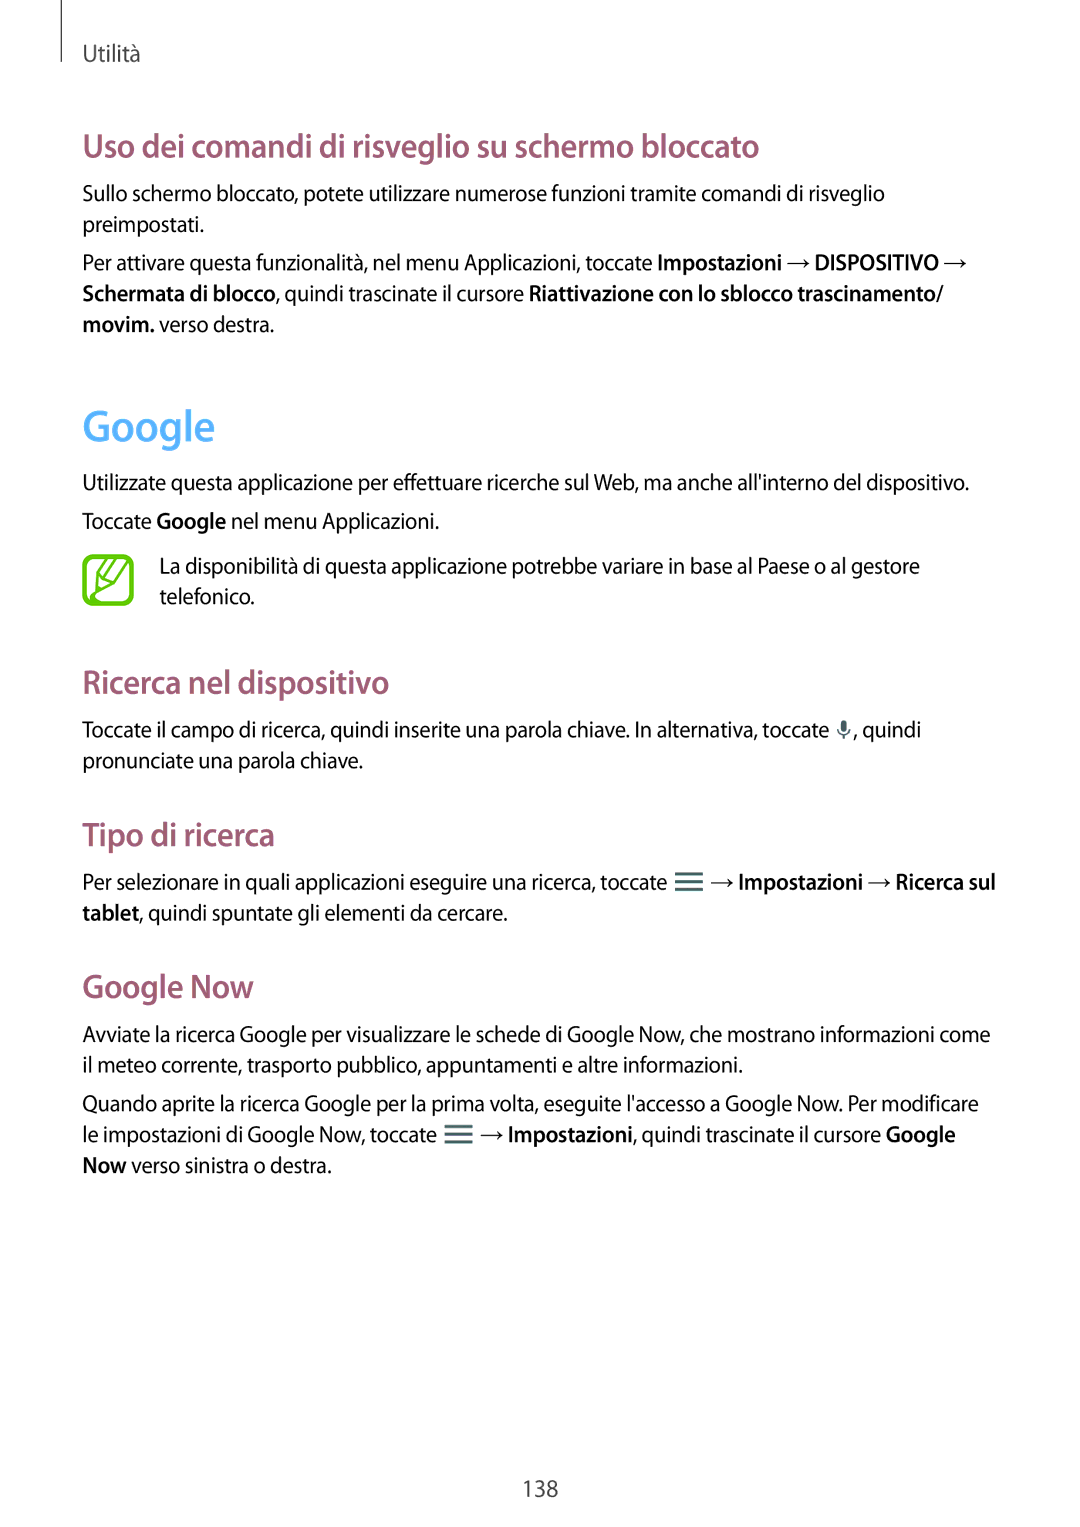 Samsung SM-P9050ZKAITV Google, Uso dei comandi di risveglio su schermo bloccato, Ricerca nel dispositivo, Tipo di ricerca 